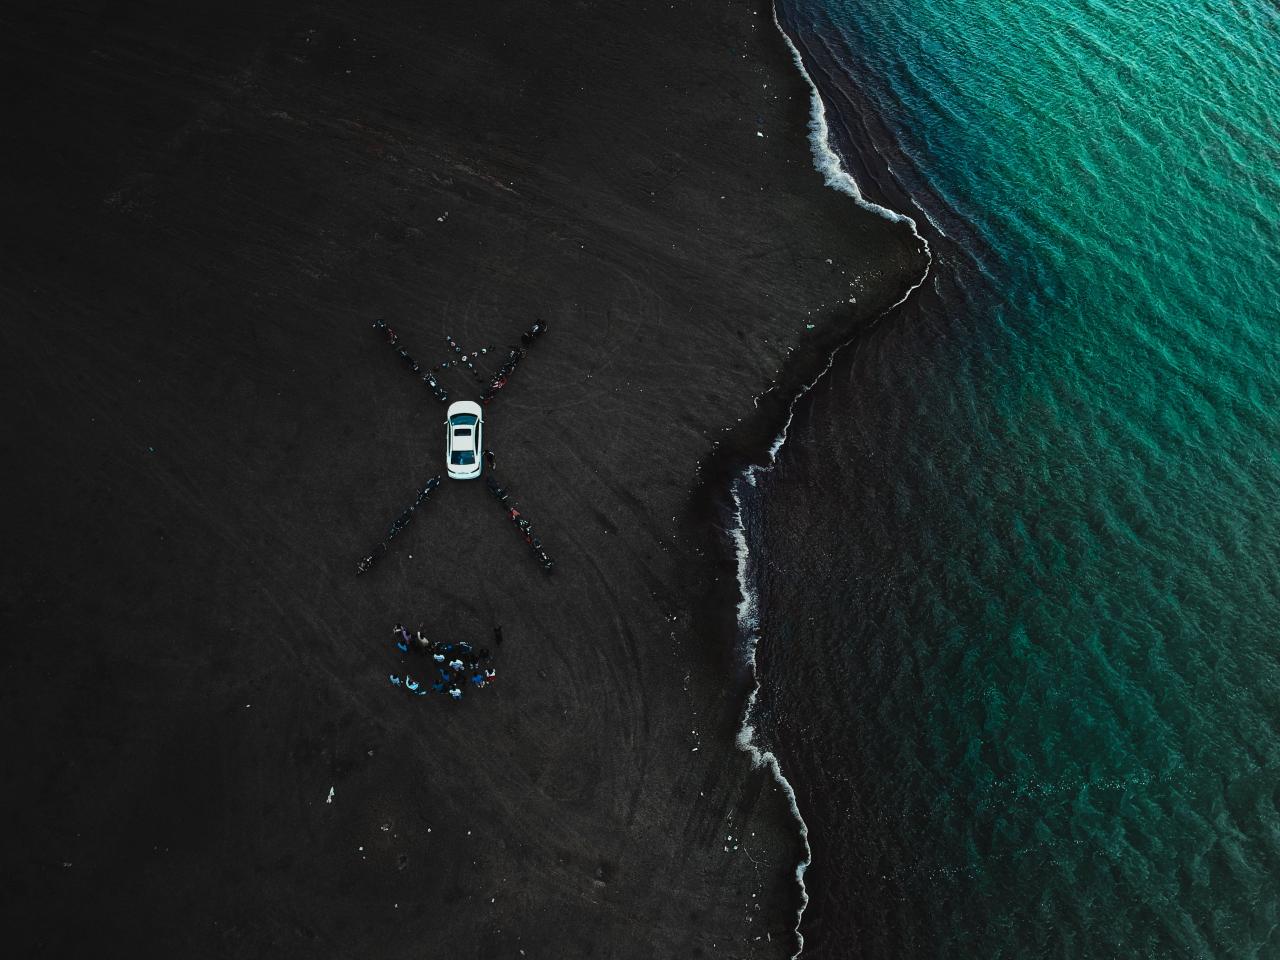 سيارة بيضاء متوقفة بالقرب من شاطئ البحر